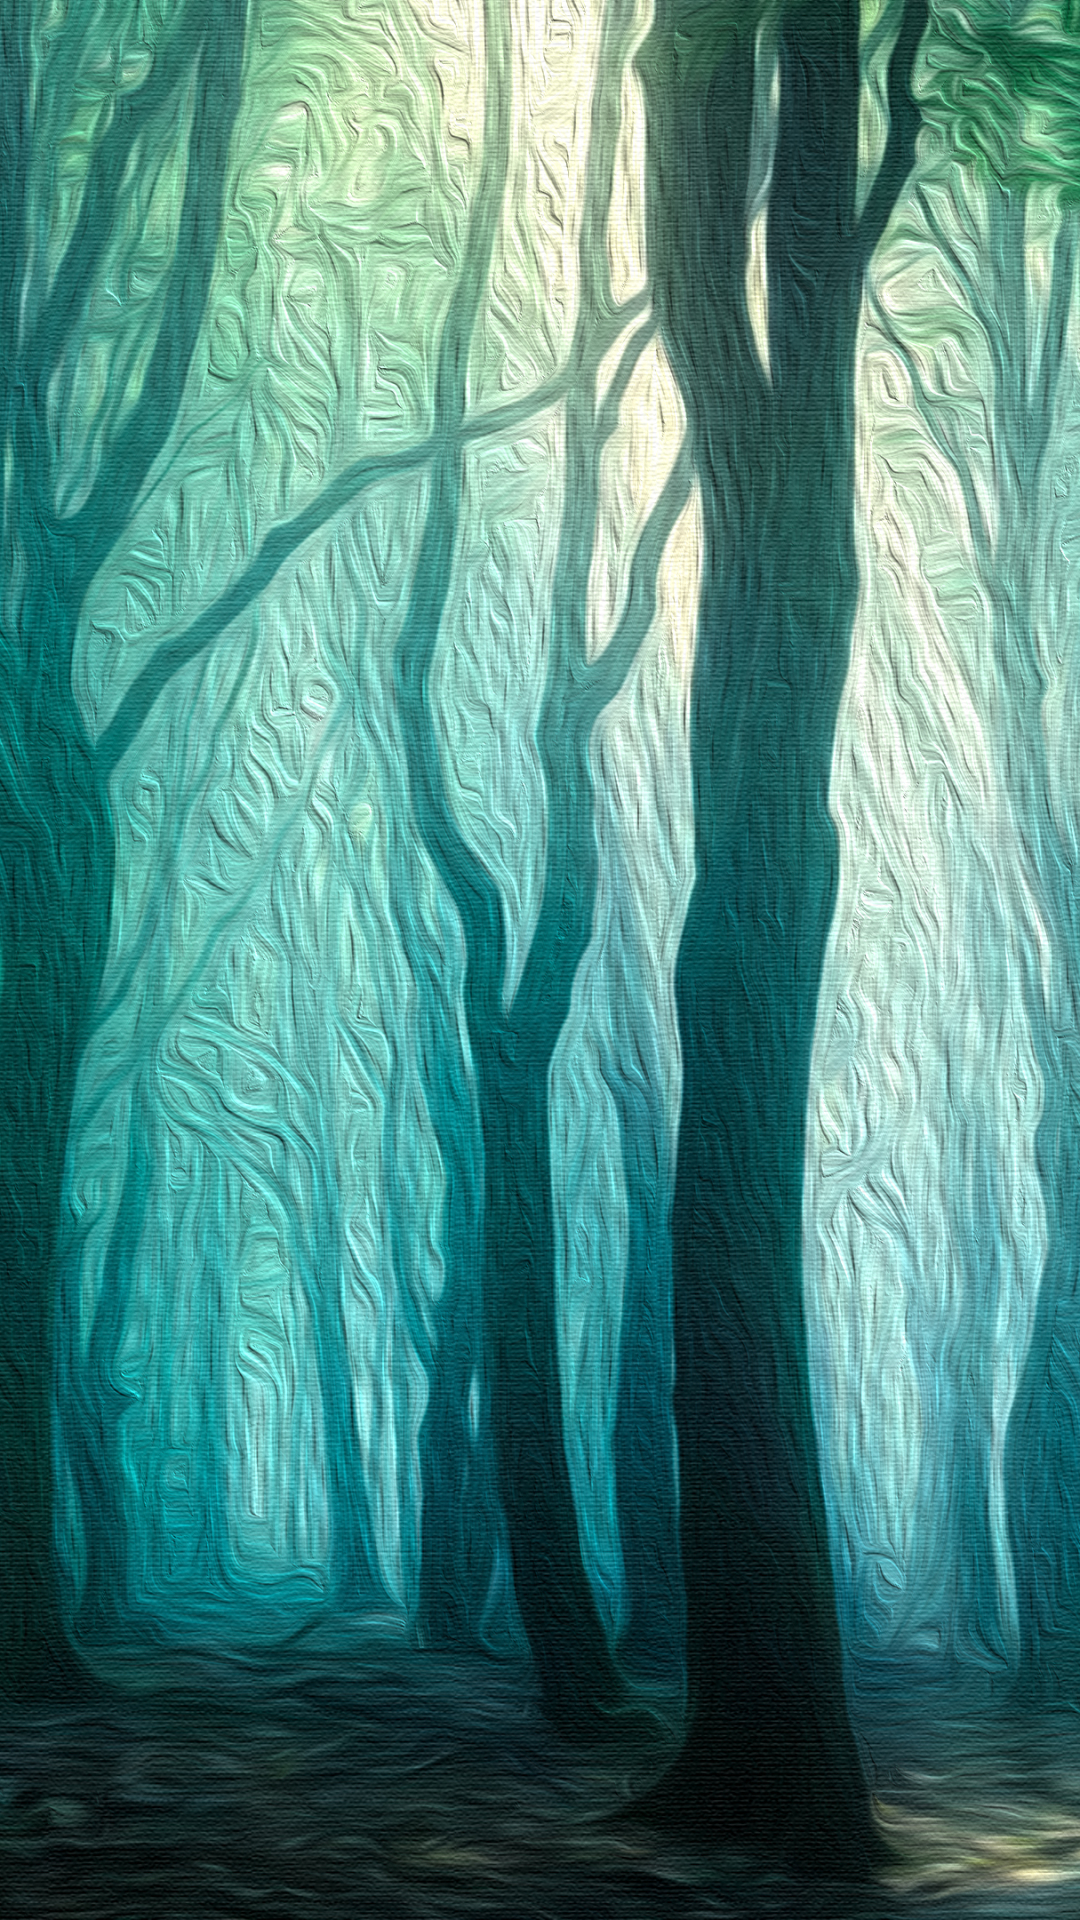 Misty Woodland Path - Oil on Canvas